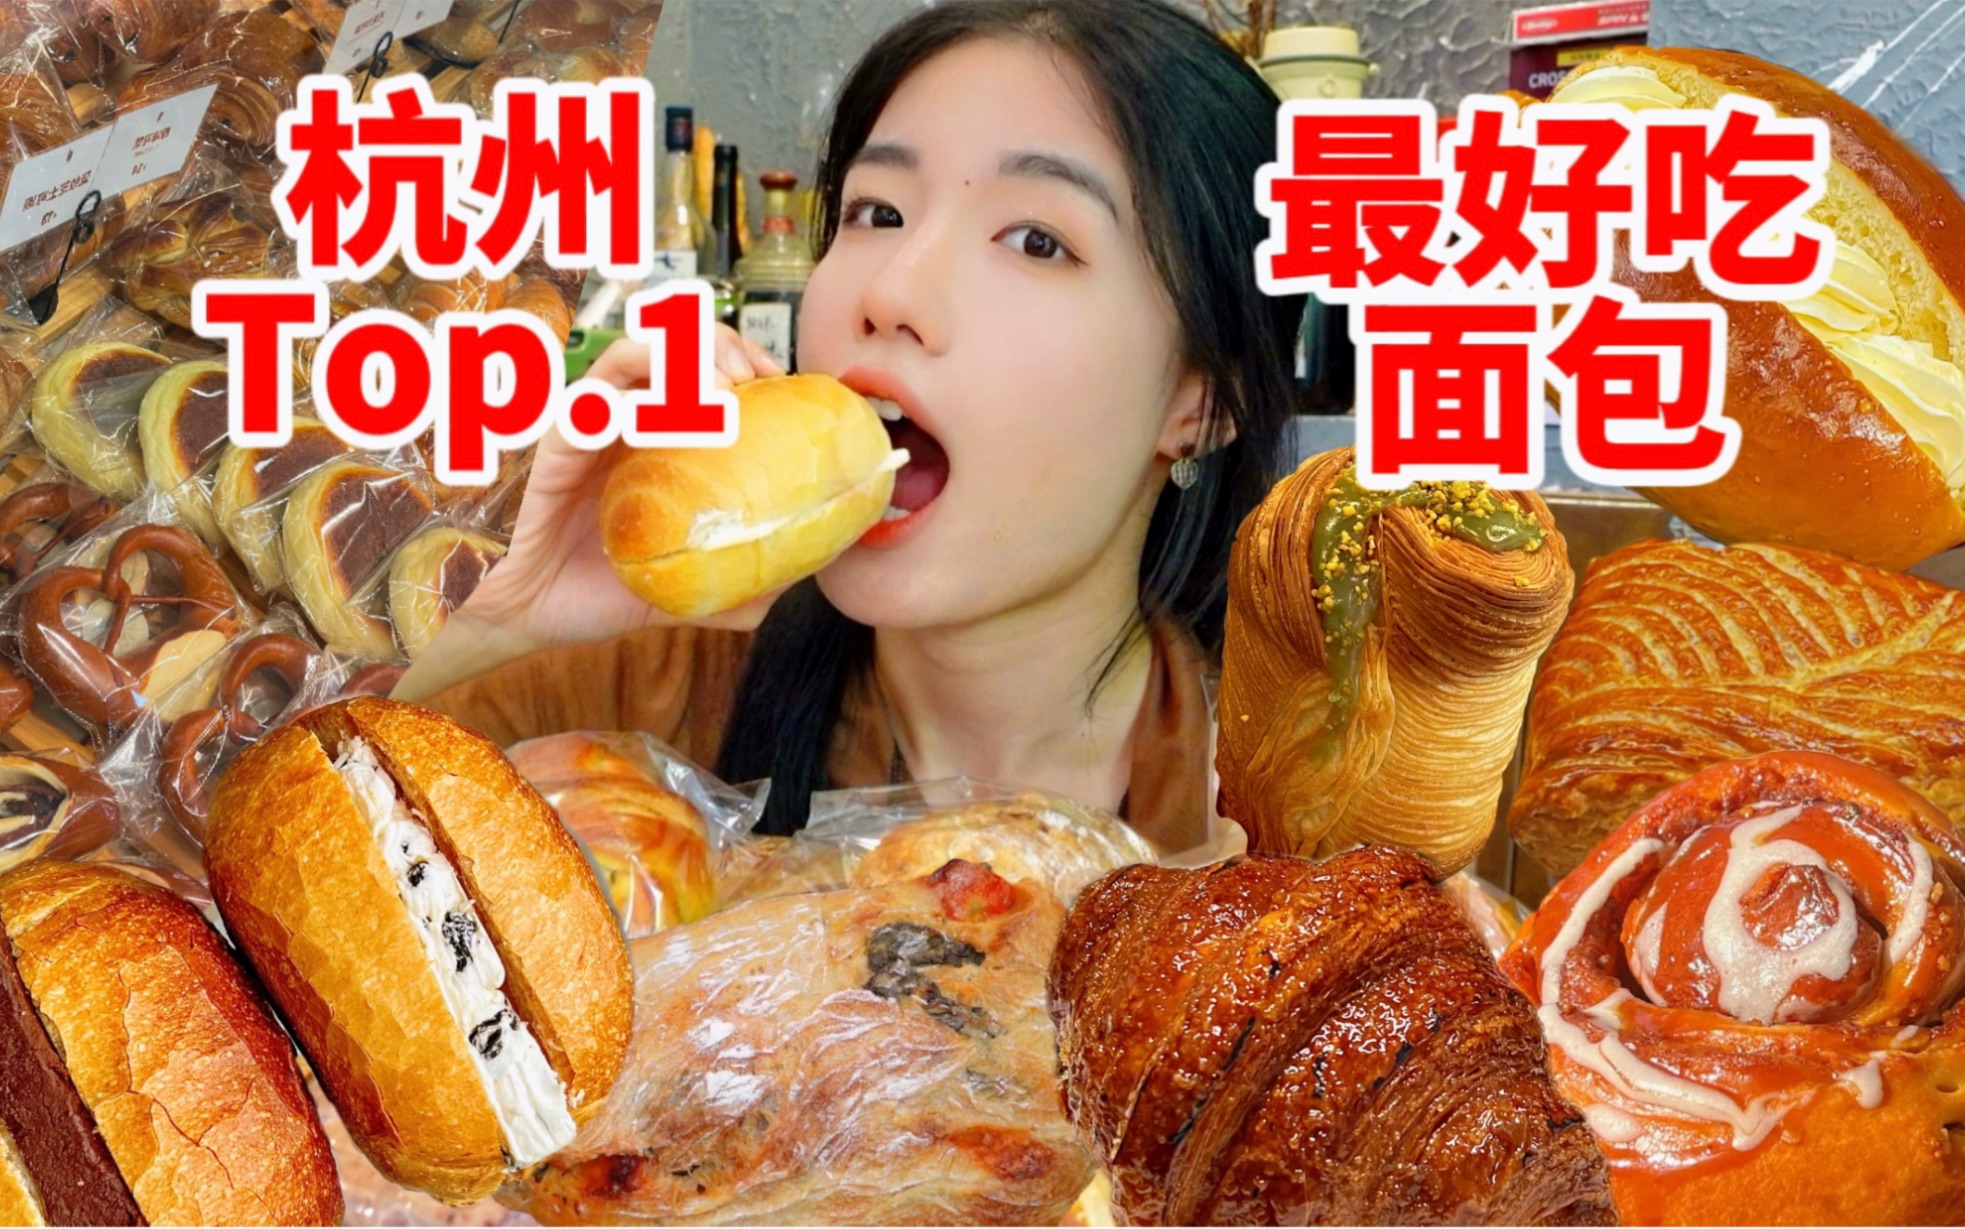 目前心目中杭州面包TOP.1 ！！！来杭州都给我吃它！吃了这个黄油小包再离开杭州吧！